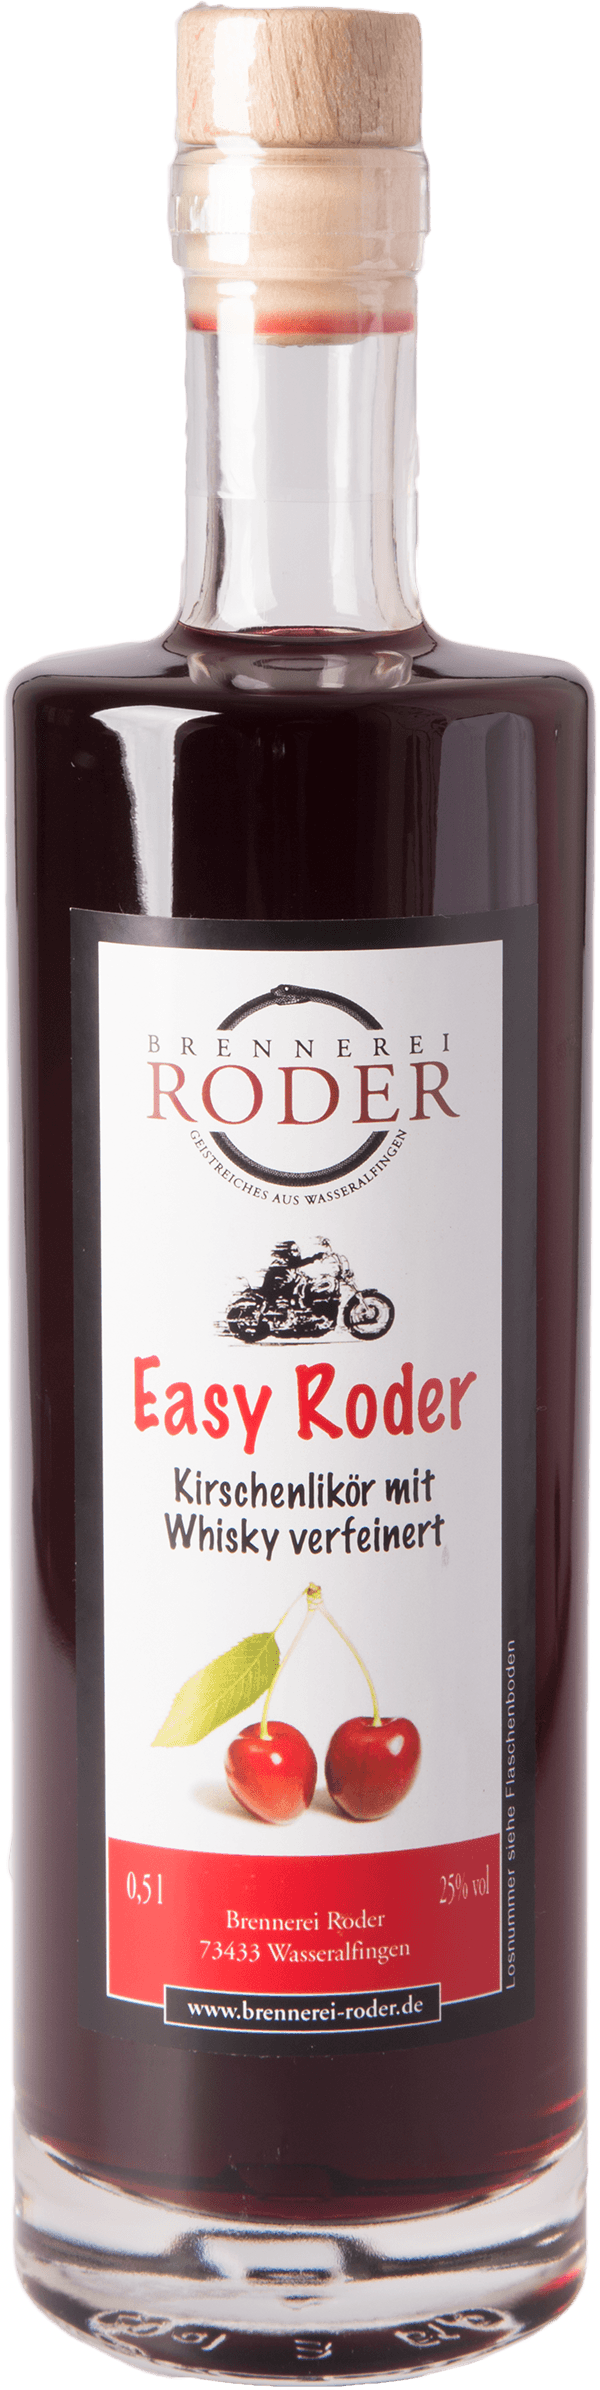 easy-roder-mit-whisky-25-prozent-shop